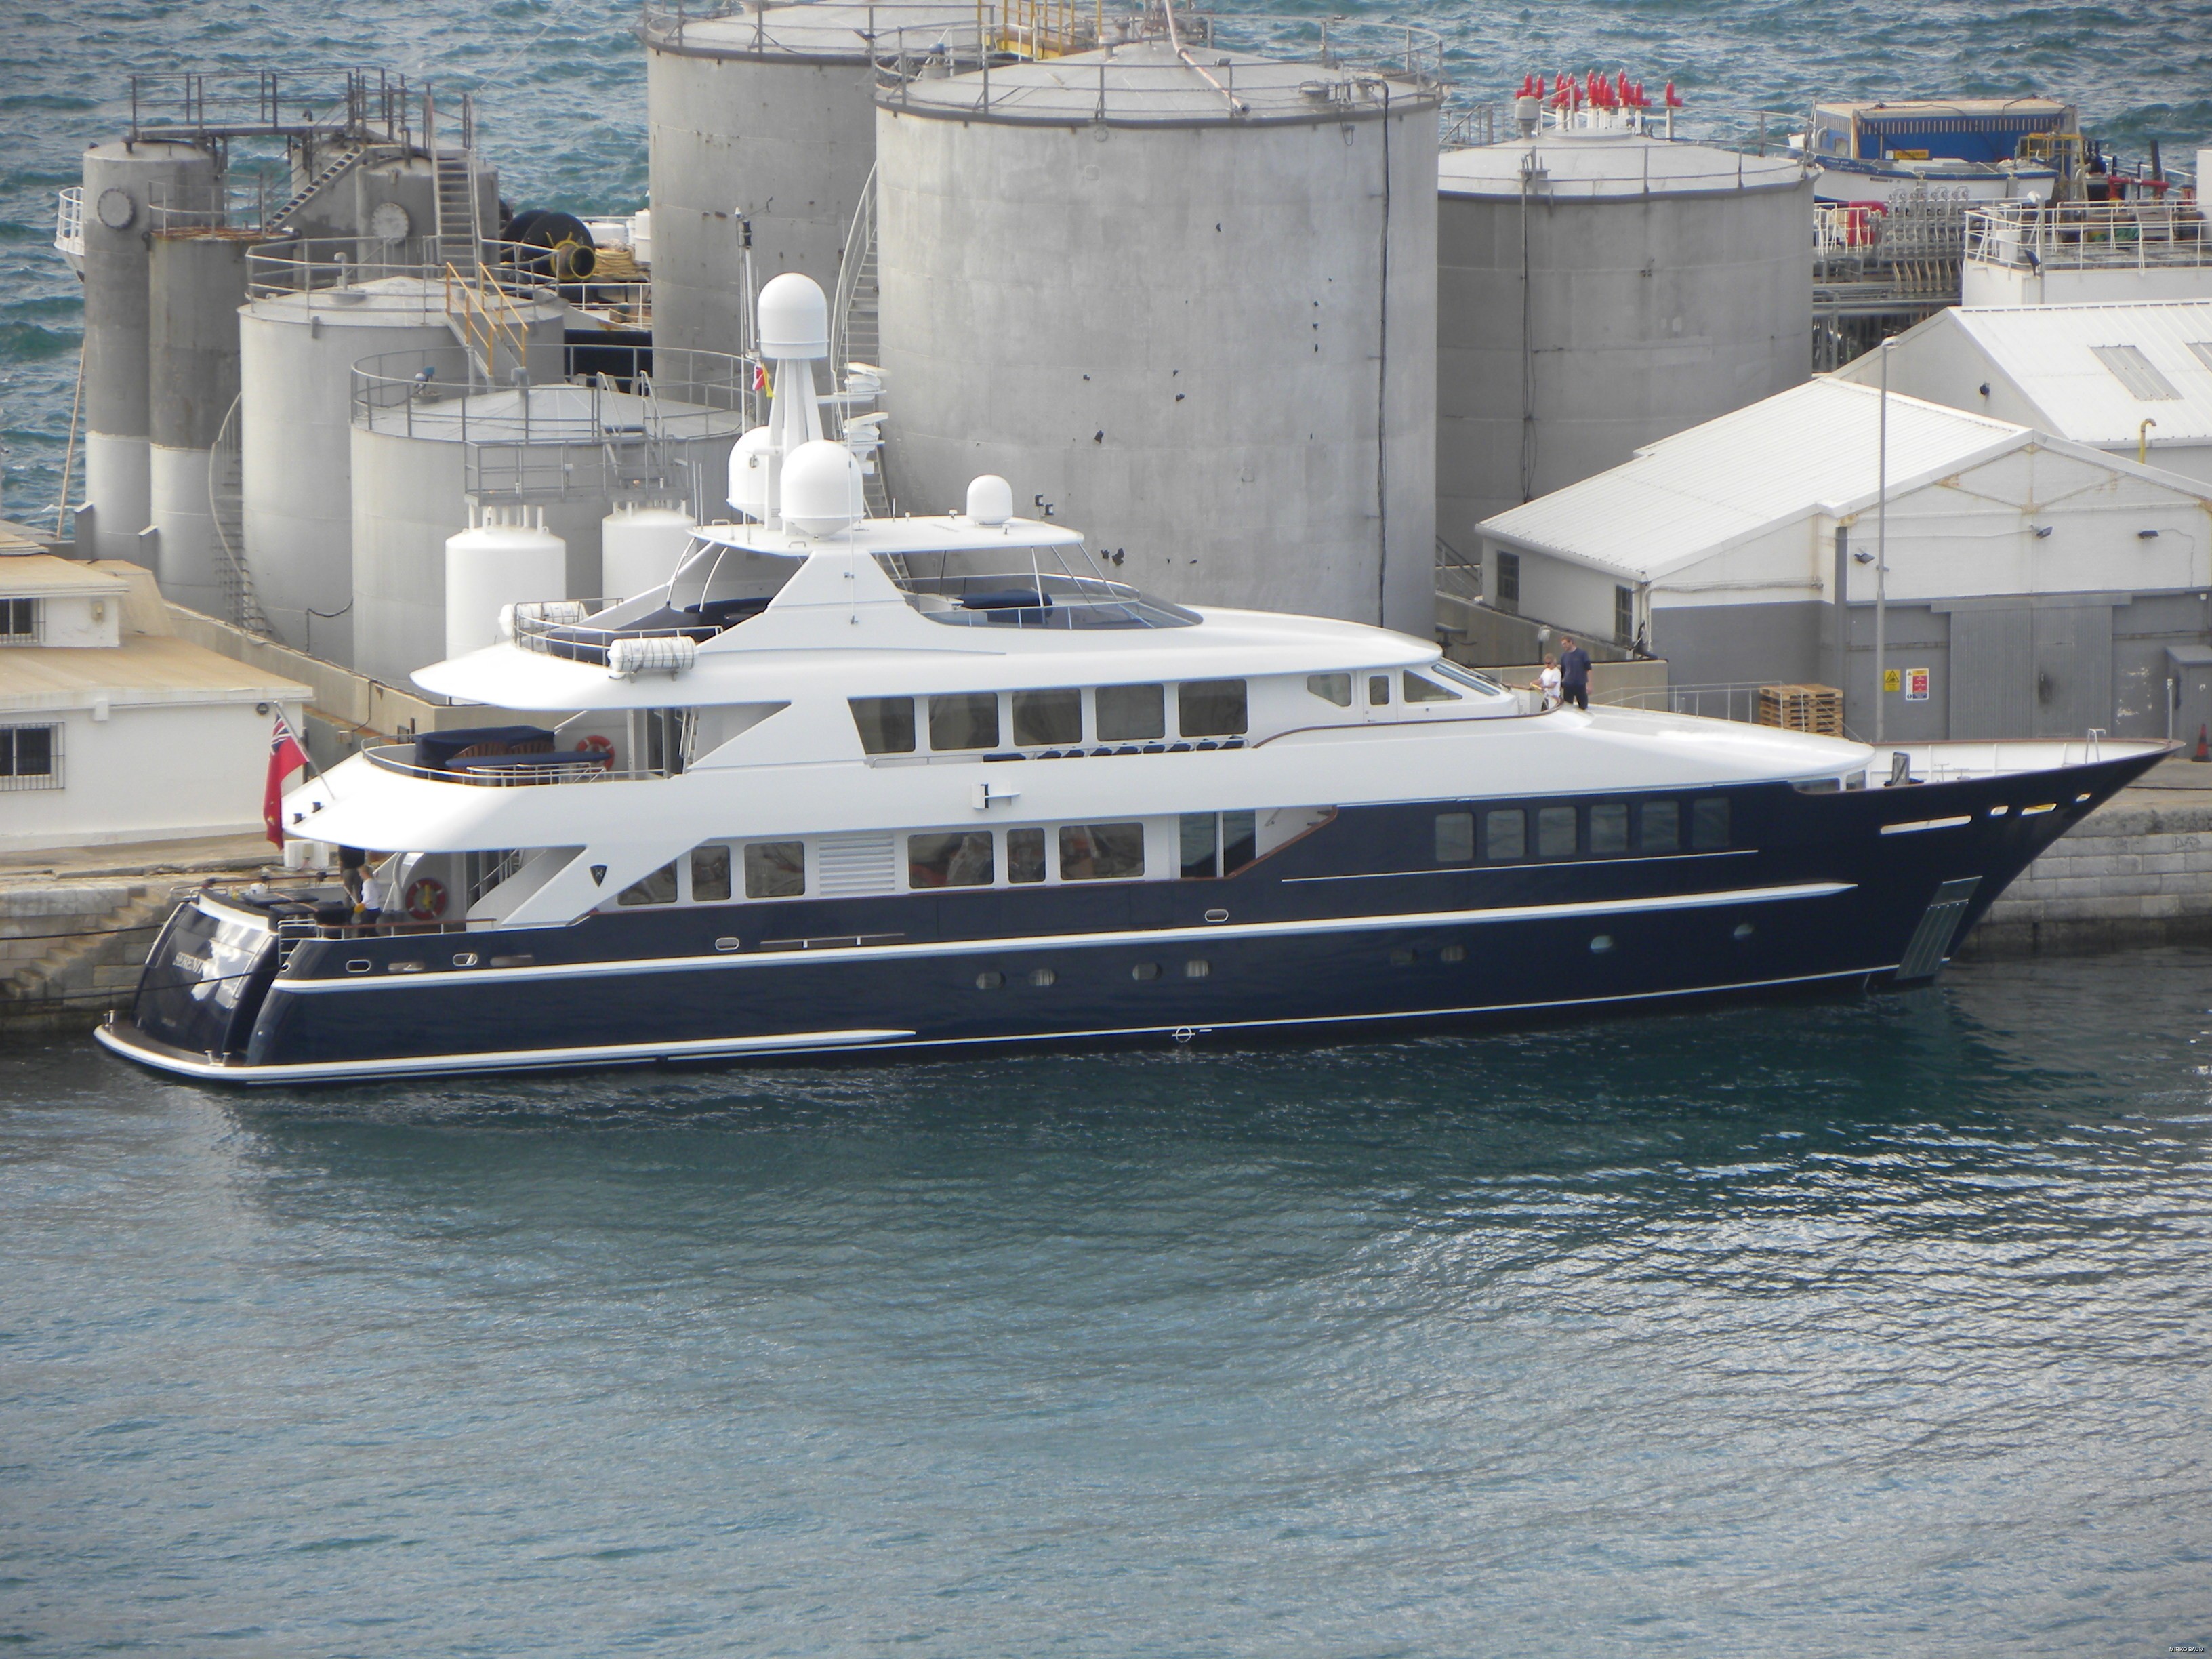 The 39m Yacht LADY AZUL